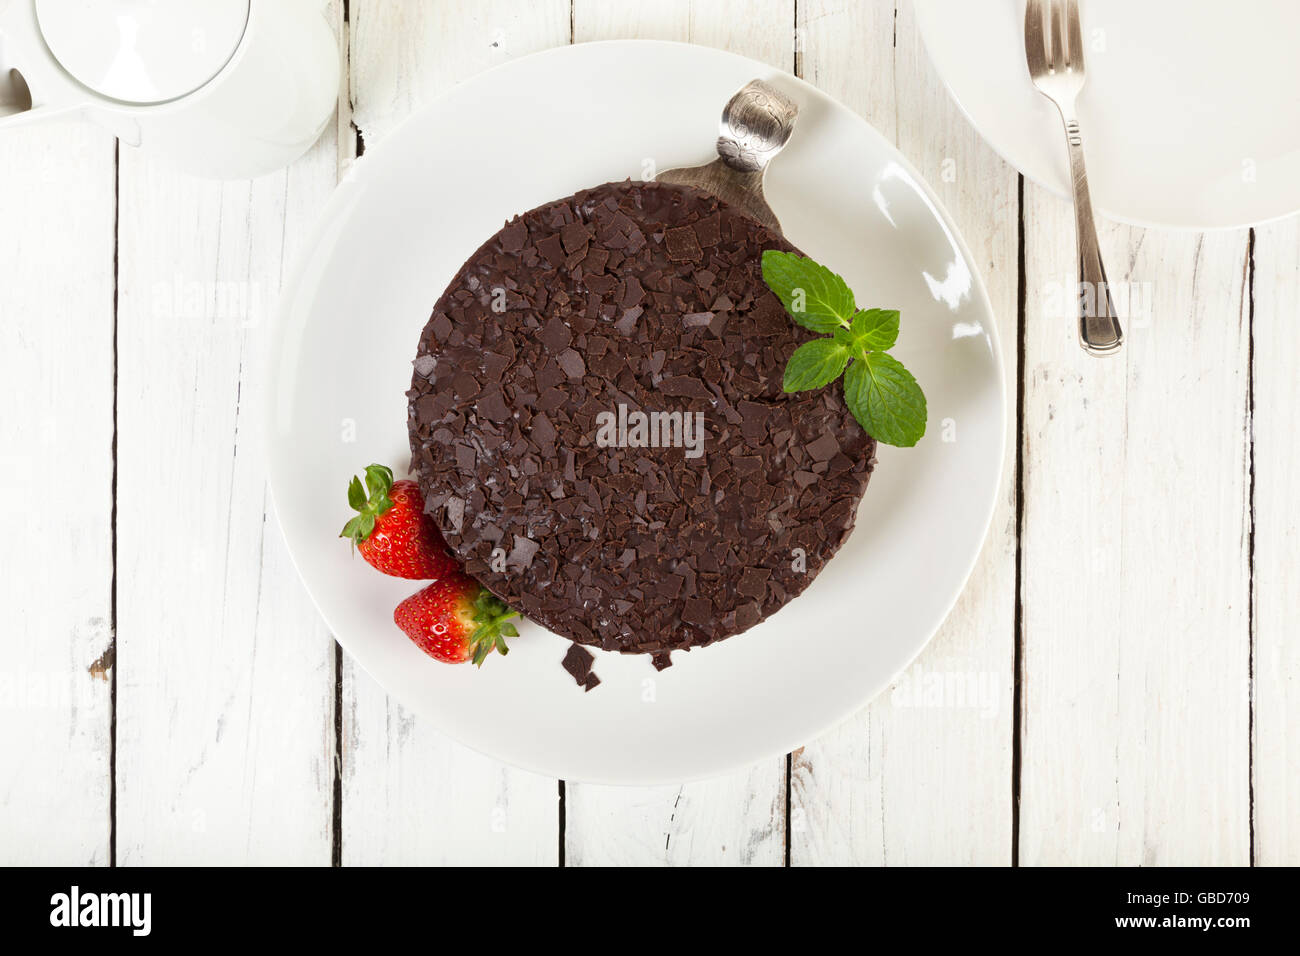 Gâteau au chocolat sur une assiette, garnir de fraises, sur table rustique, vue du dessus Banque D'Images